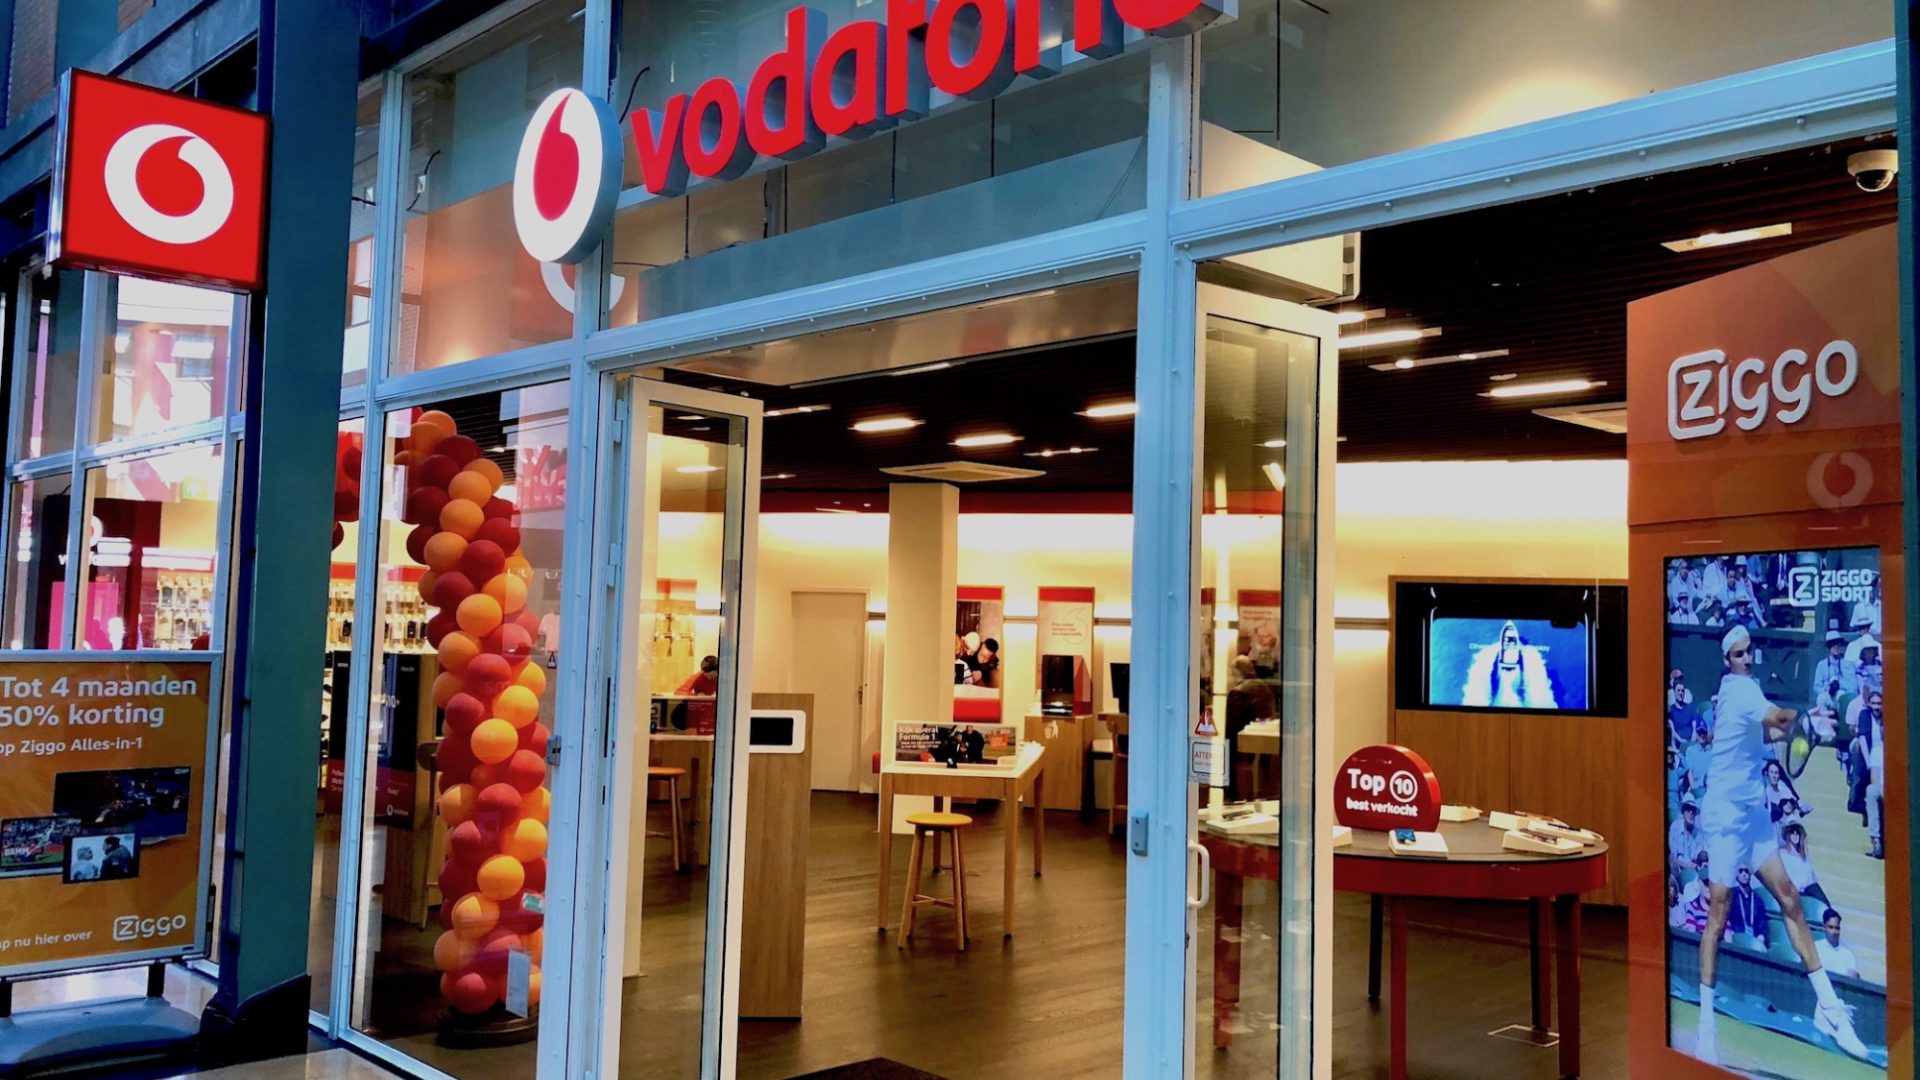 Vodafone Heerlen